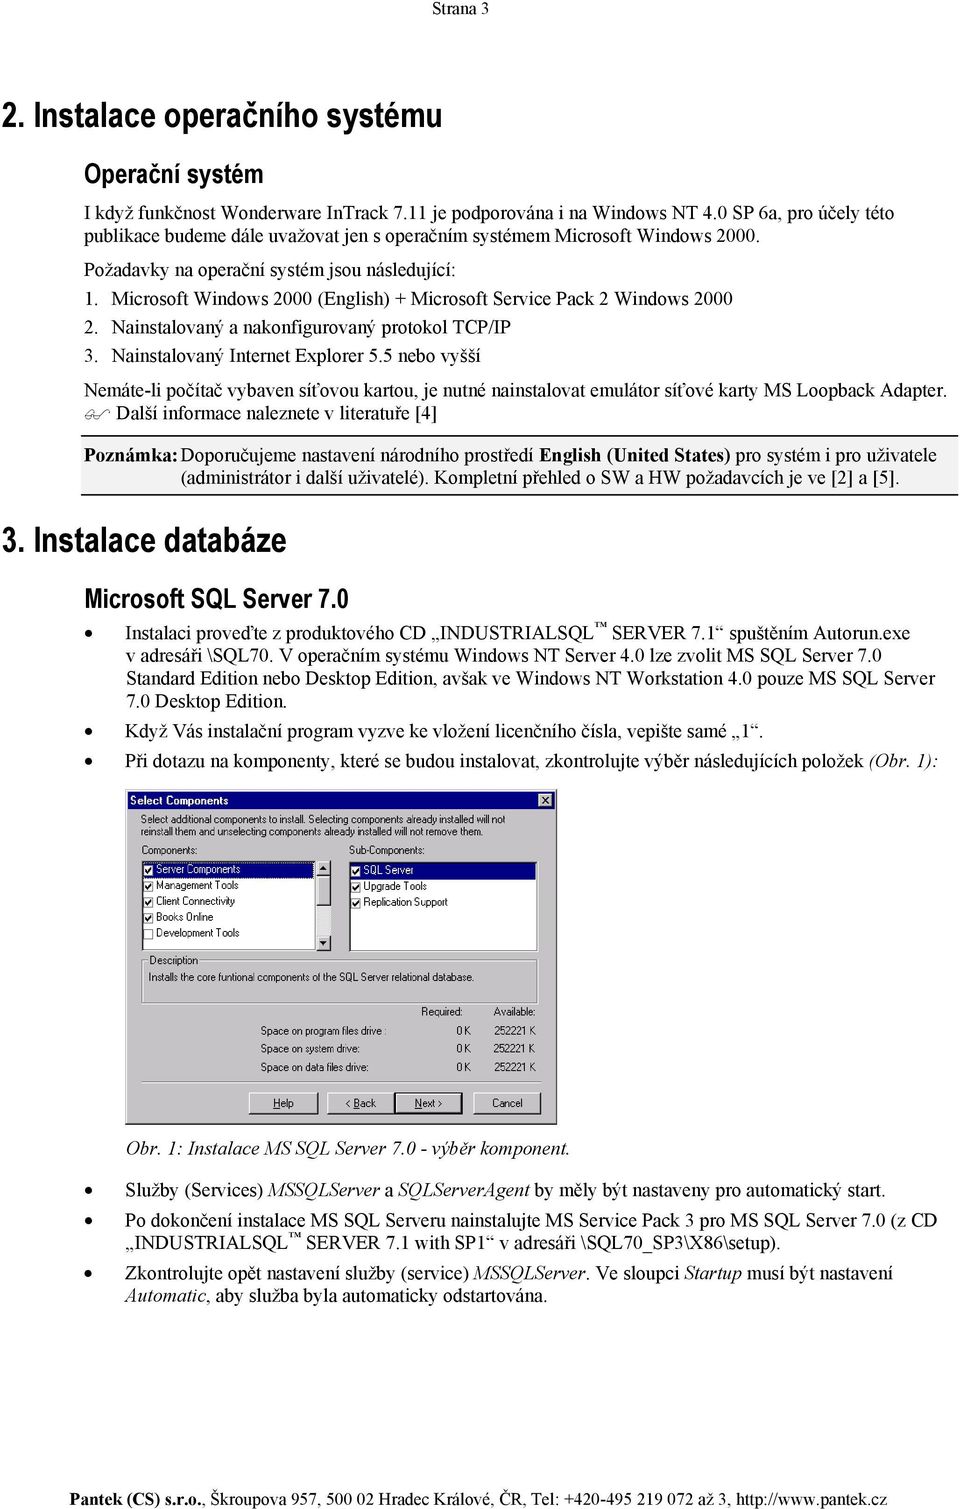 Microsoft Windows 2000 (English) + Microsoft Service Pack 2 Windows 2000 2. Nainstalovaný a nakonfigurovaný protokol TCP/IP 3. Nainstalovaný Internet Explorer 5.